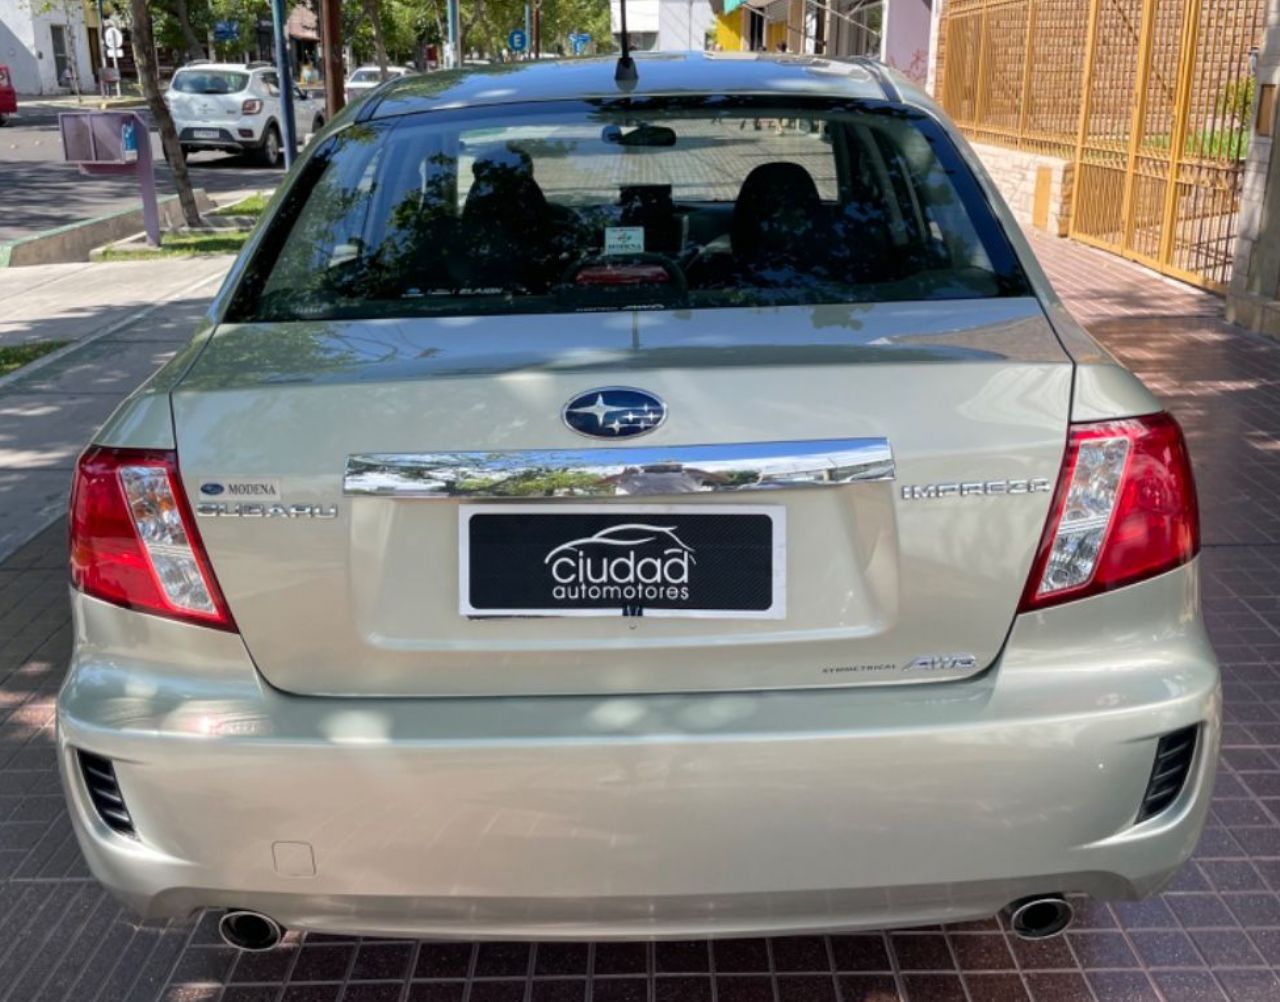 Subaru Impreza Usado en Mendoza, deRuedas